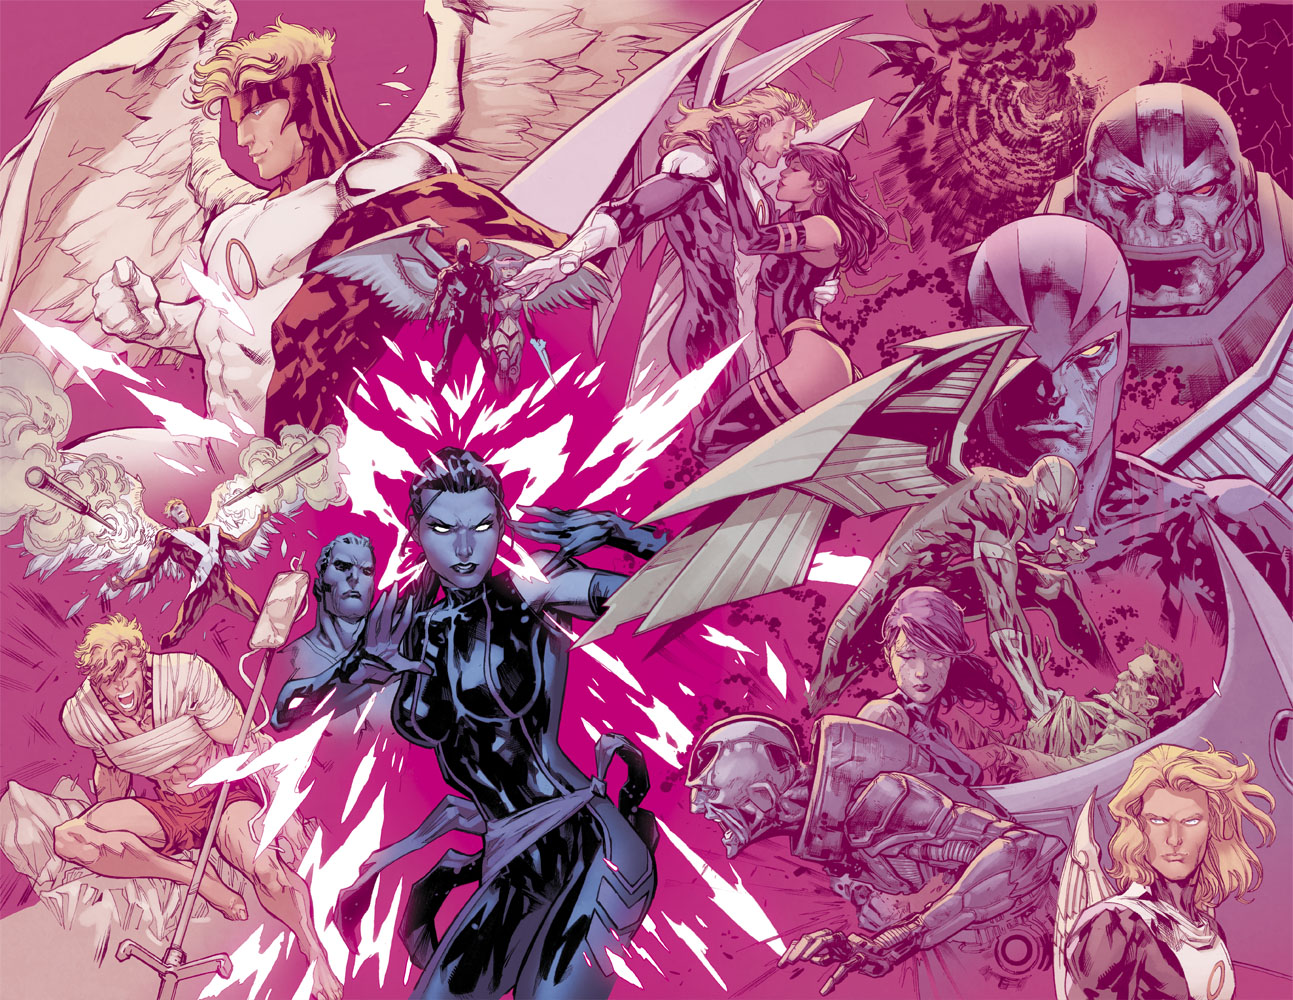 Marvel Preview: Uncanny X-Men #6